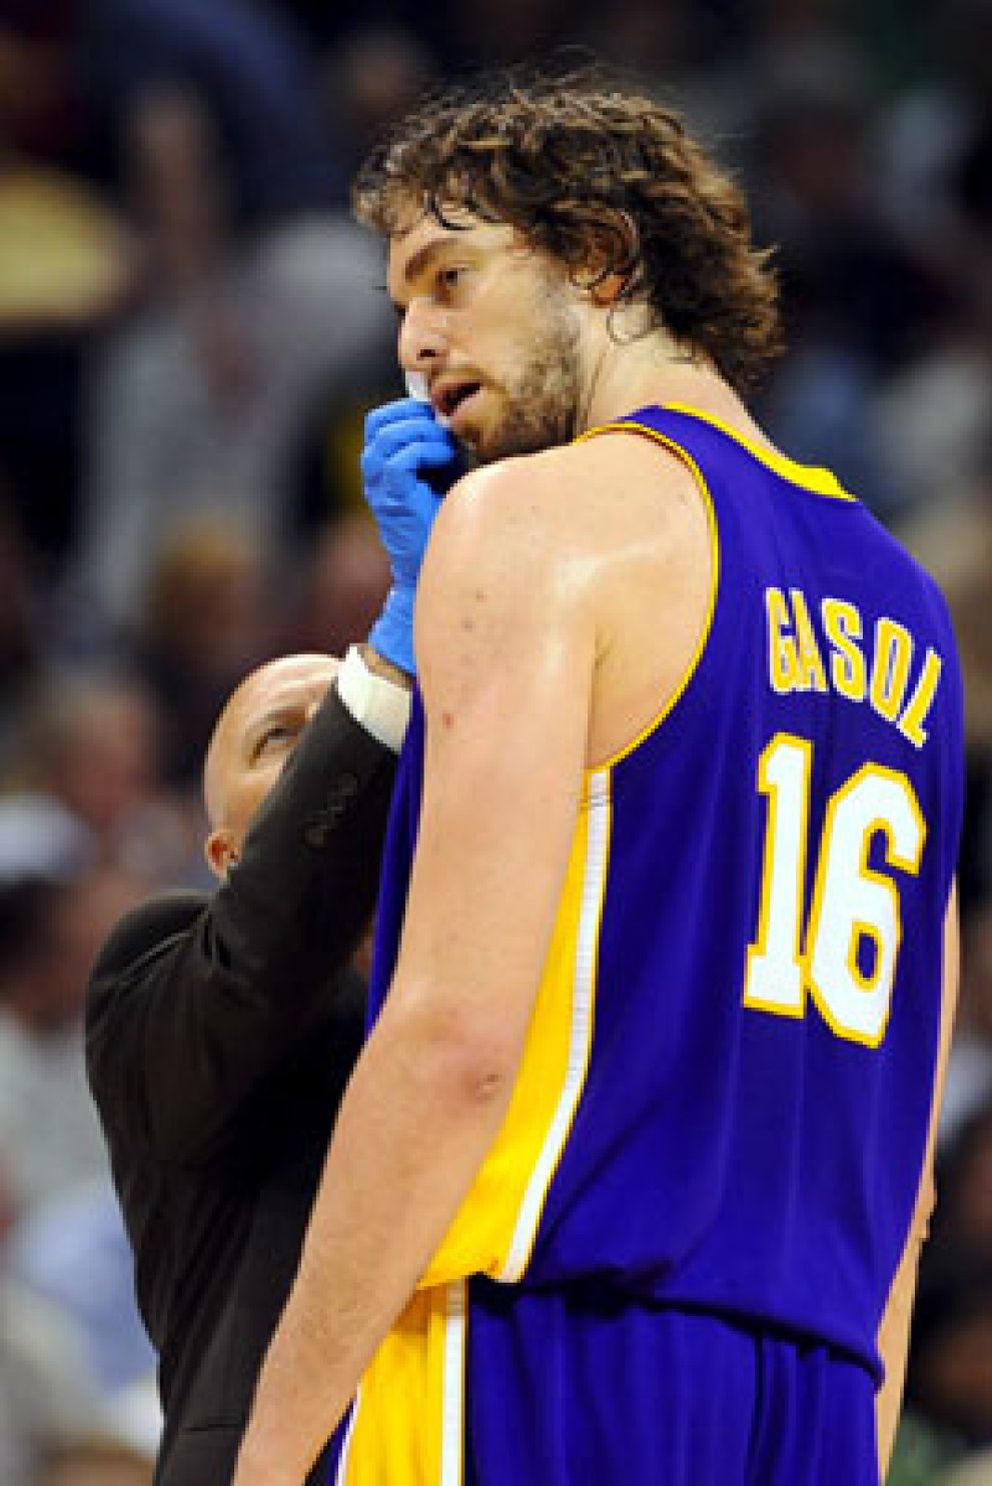 Foto: Los Lakers pierden fuelle pese a un buen Gasol